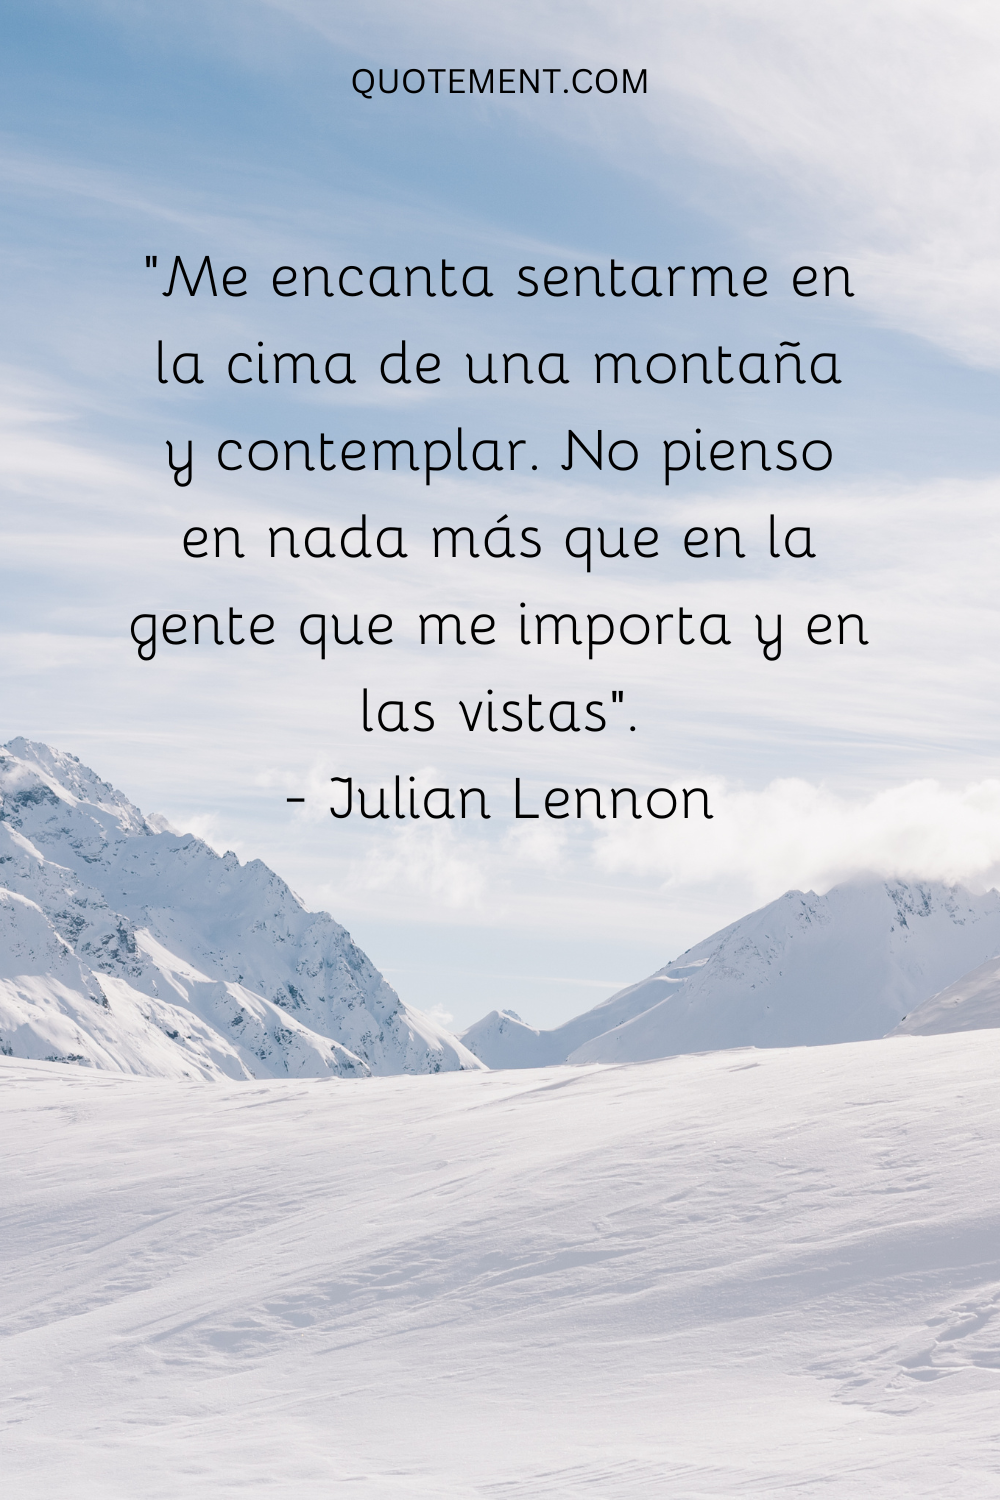 "Me encanta sentarme en la cima de una montaña y contemplar. No pienso en nada más que en la gente que me importa y en las vistas". - Julian Lennon